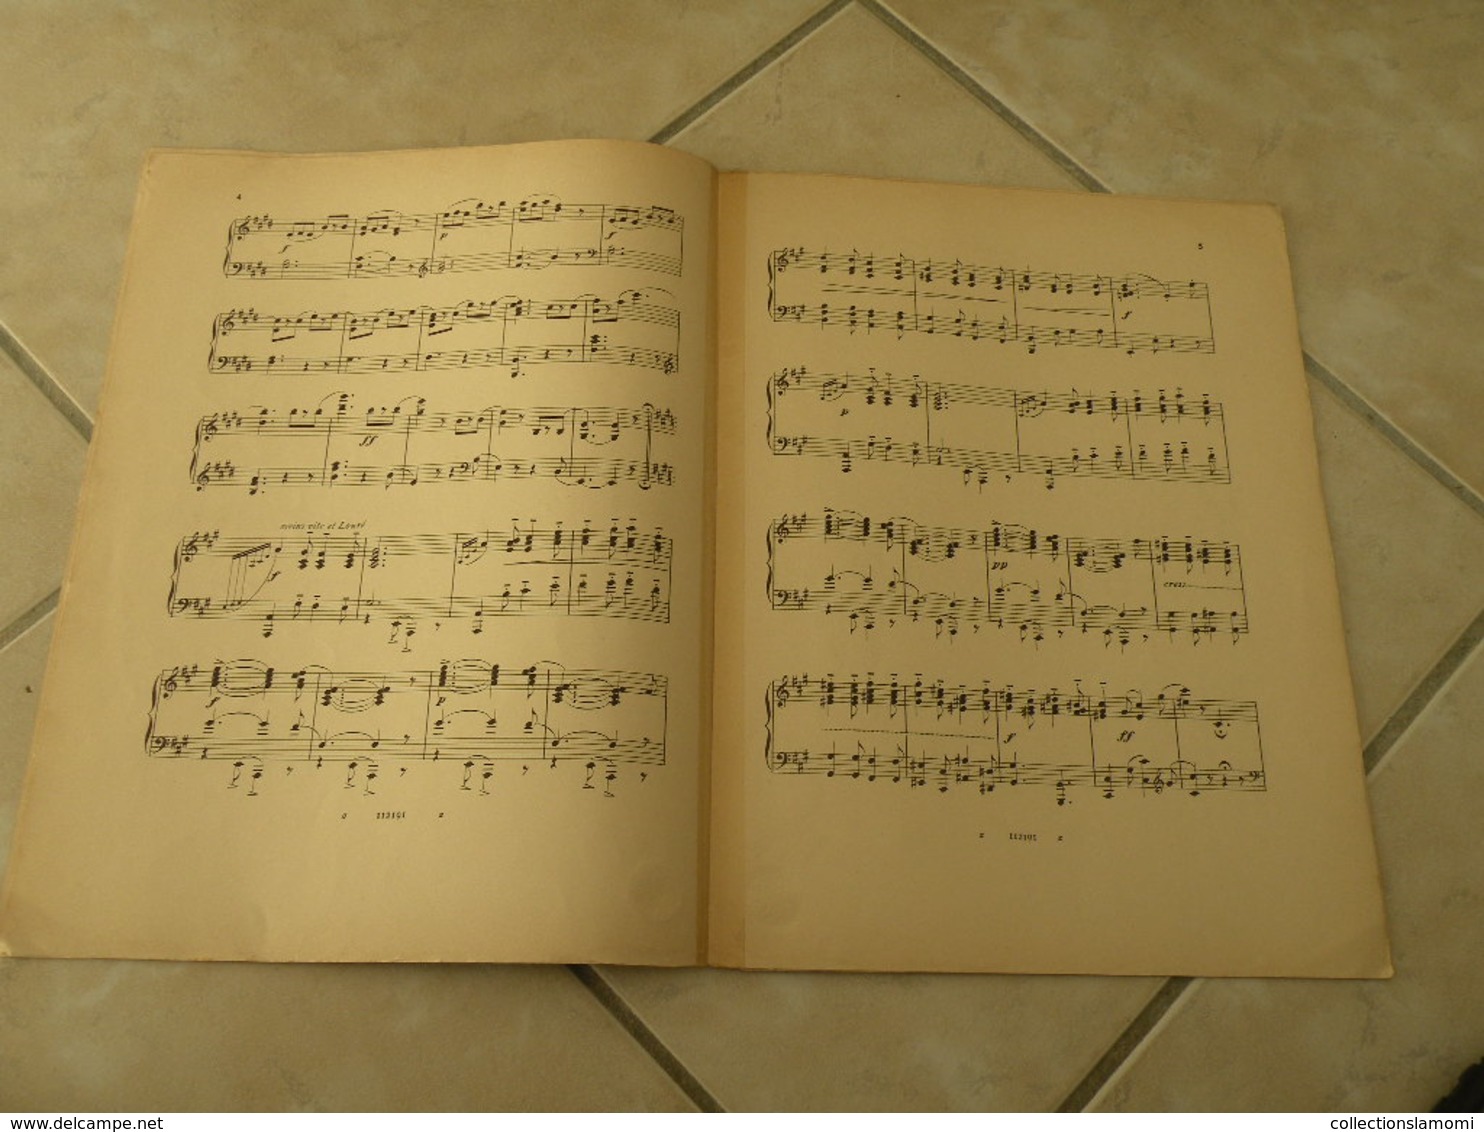 Polichinelle (A Mademoiselle Lucie Hardouin) -(Musique J. Muracour-Lepetit) - Partition (Piano) - Instruments à Clavier